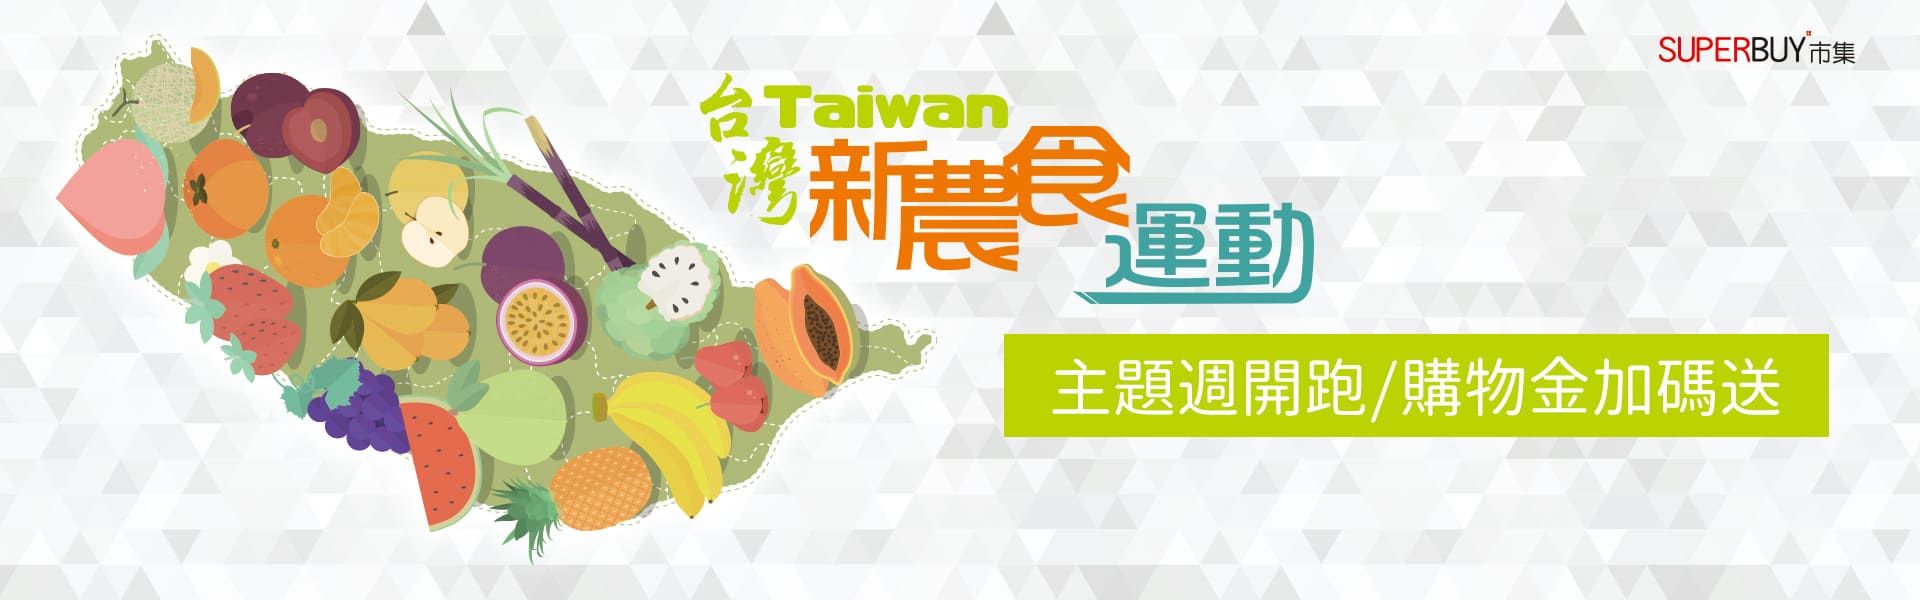 2019台灣新農食運動